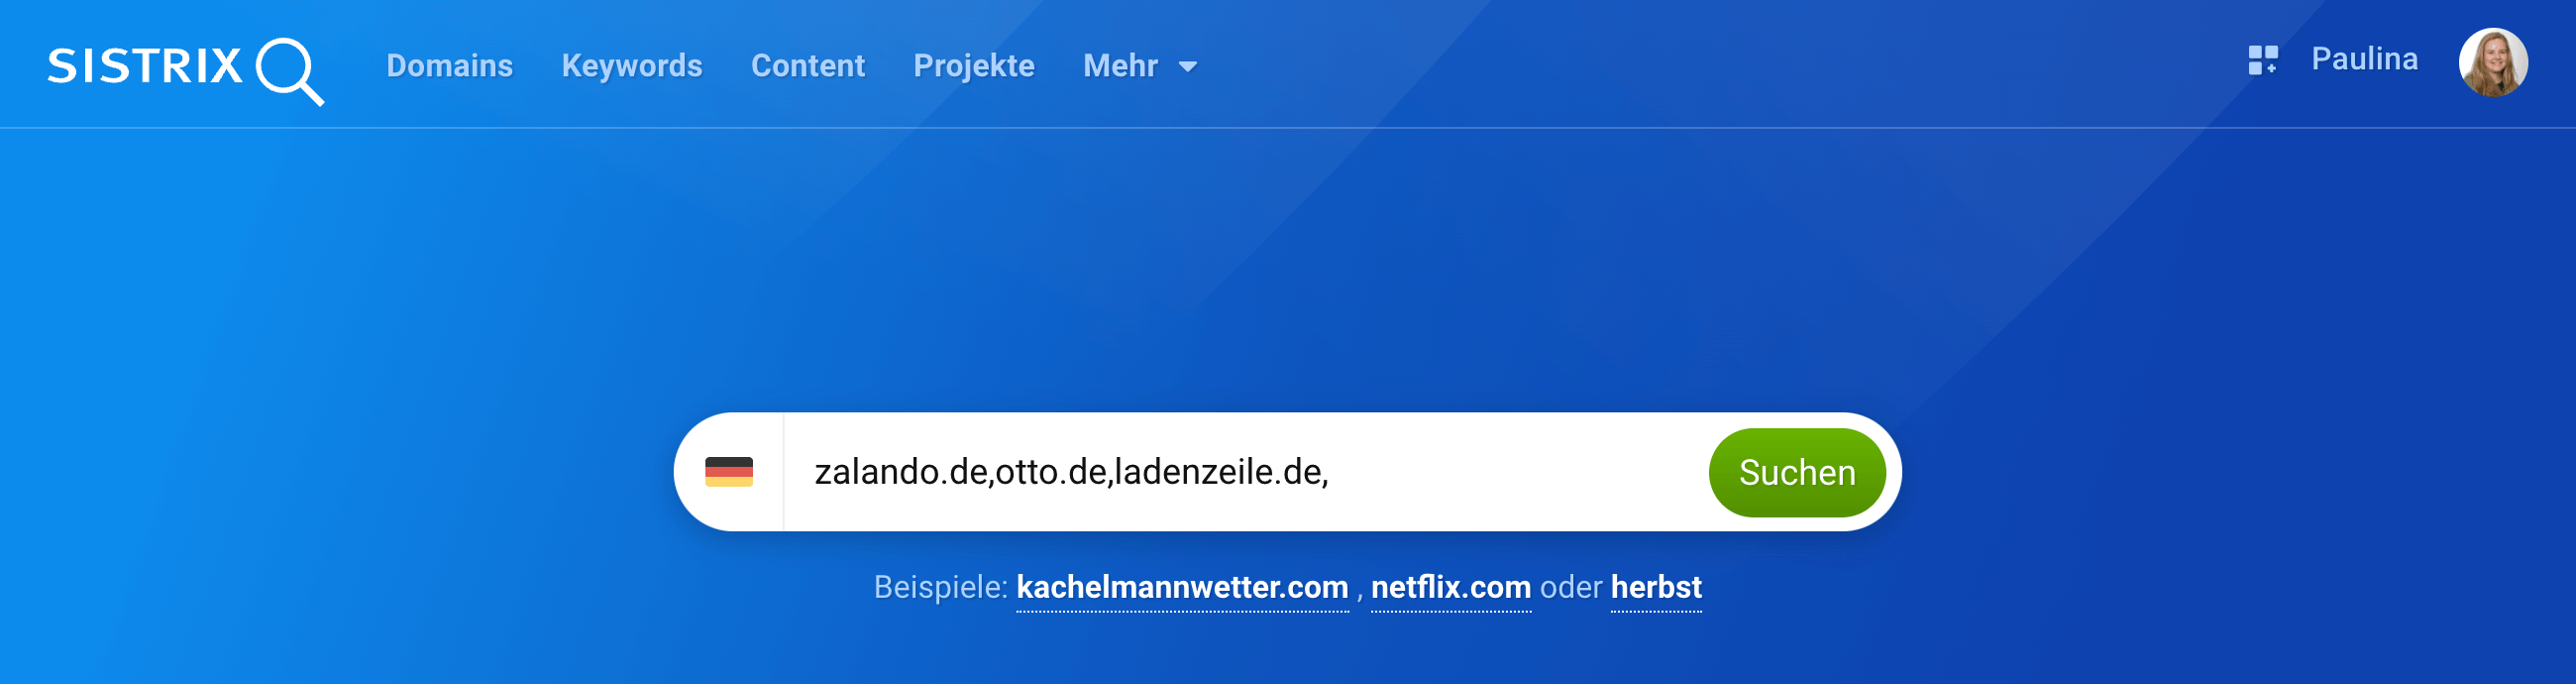 Wir geben als Beispiel die Domains zalando.de, otto.de, ladenzeile.de, etsy.com, peek-cloppenburg.de, stylight.de, aboutyou.de ein und vergleichen diese.